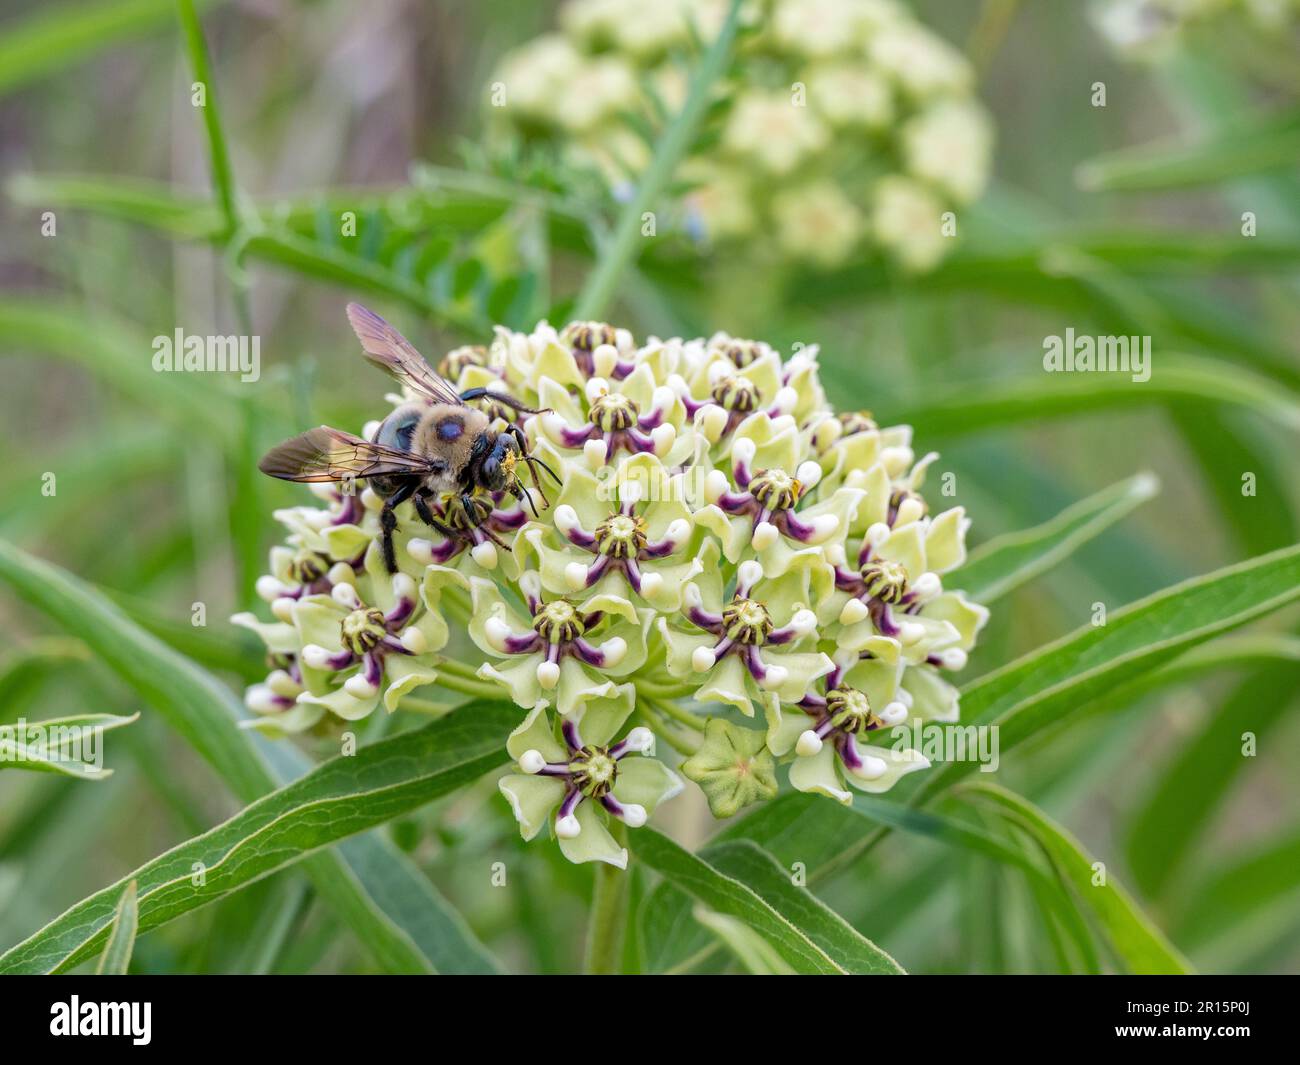 Une abeille charpentier recouverte de pollen lorsqu'elle sied le nectar d'une plante de laitoued verte, Asclepias viridis. Banque D'Images